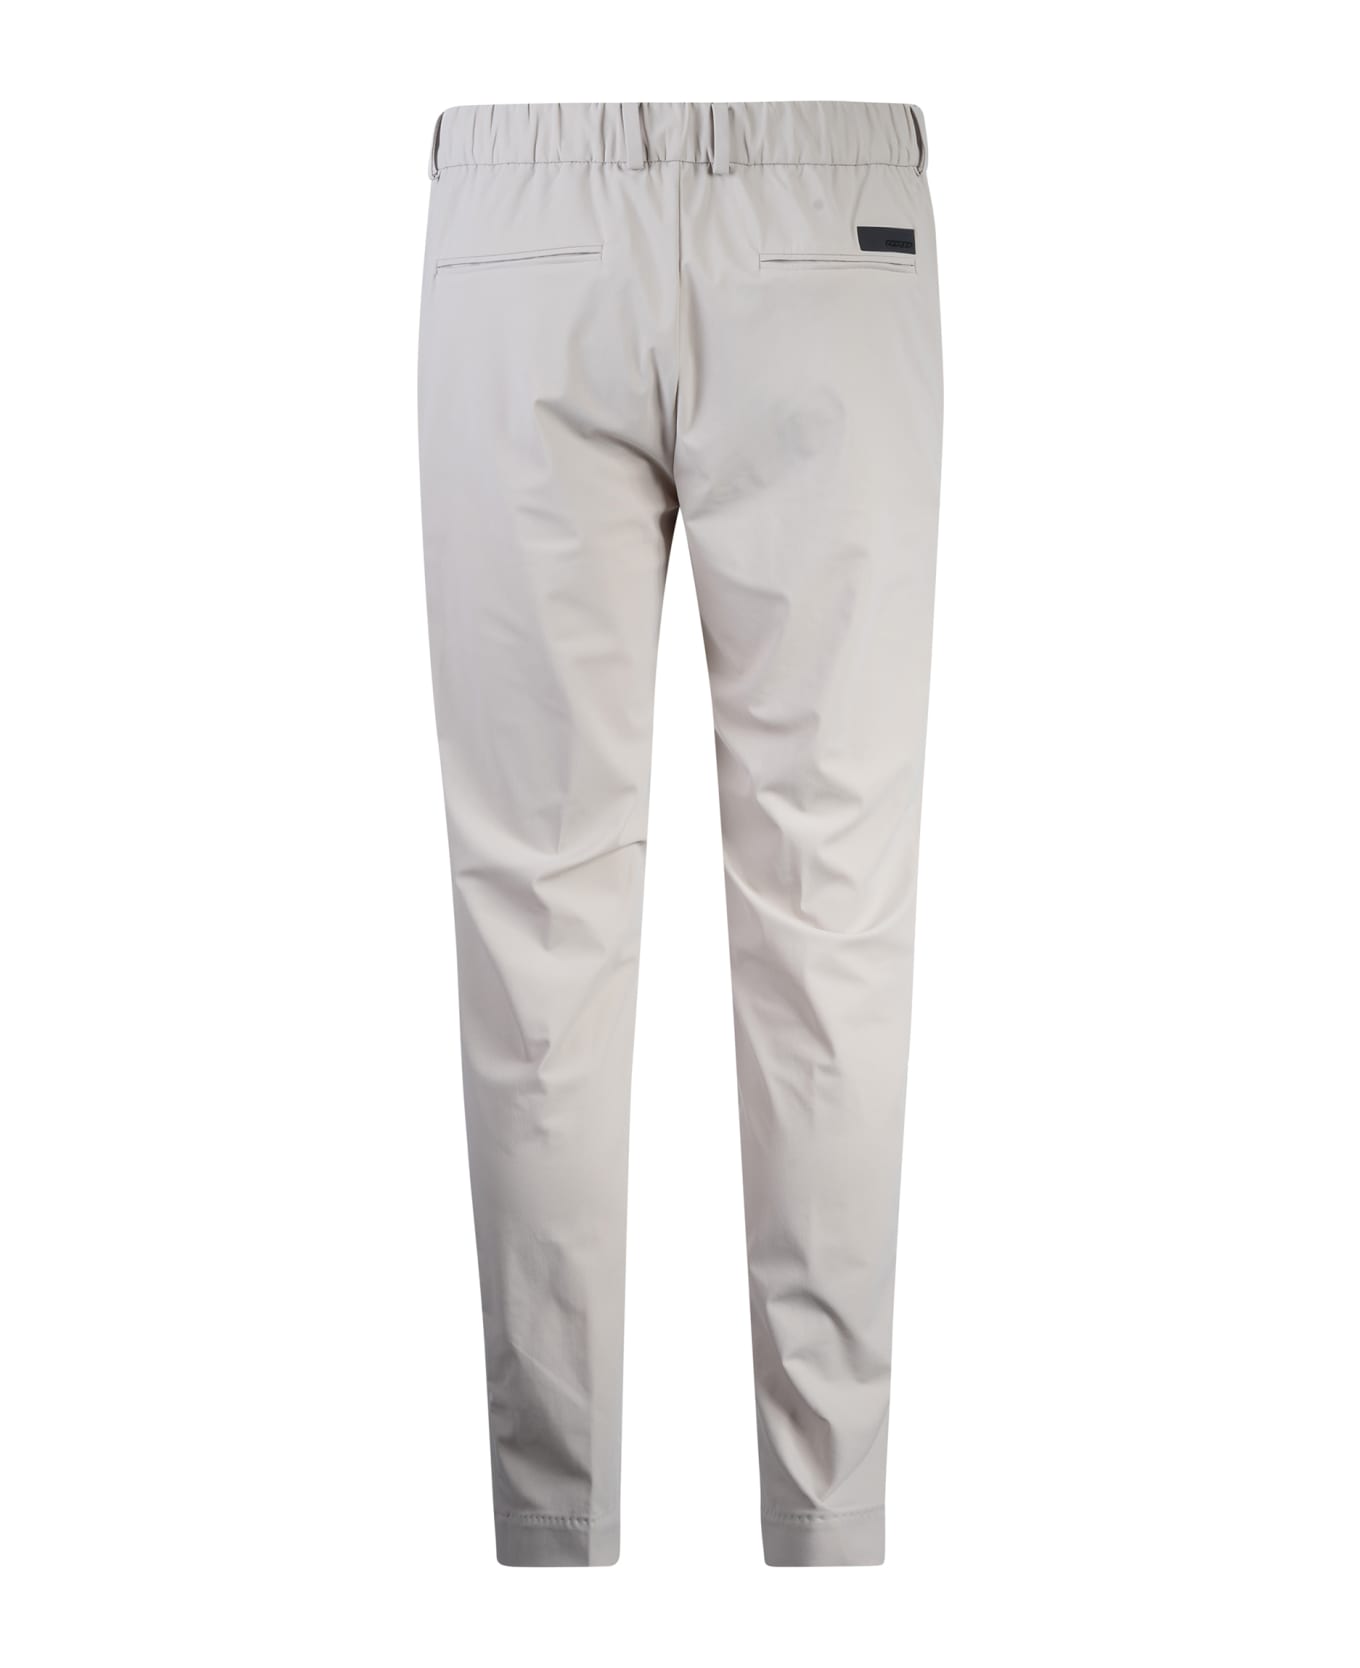 RRD - Roberto Ricci Design Revo Chino Trousers - White